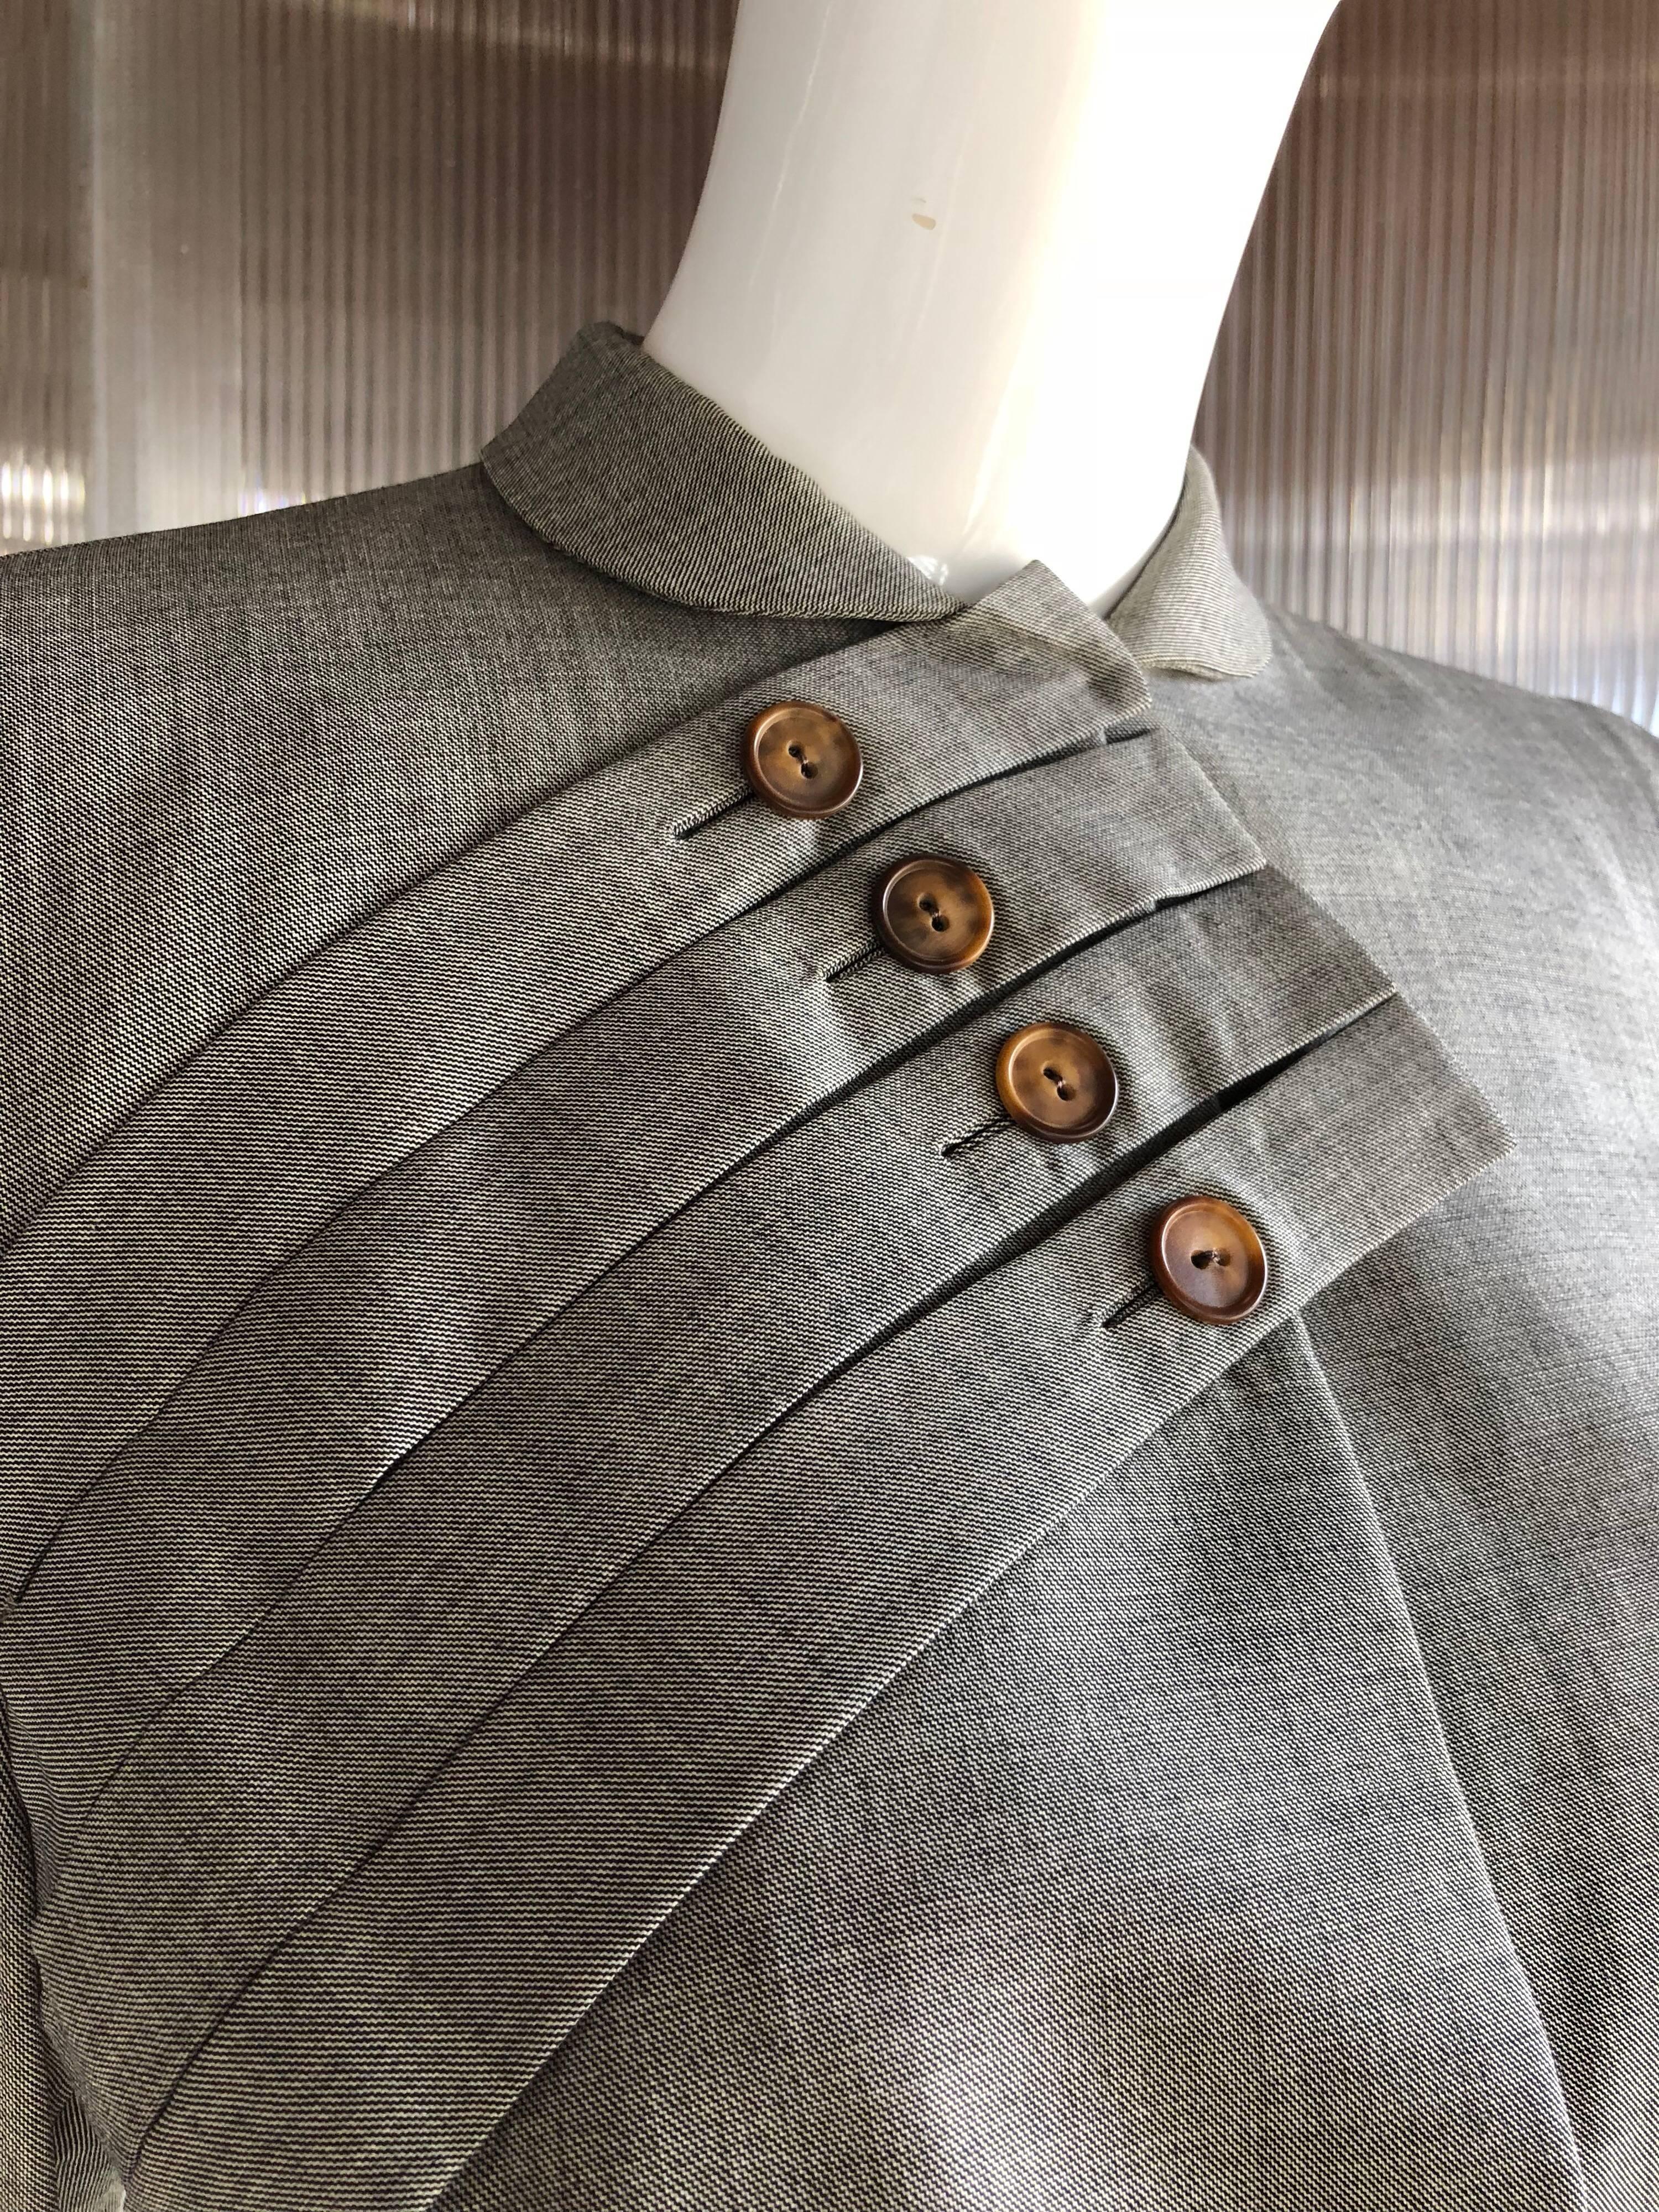 gilbert adrian suit